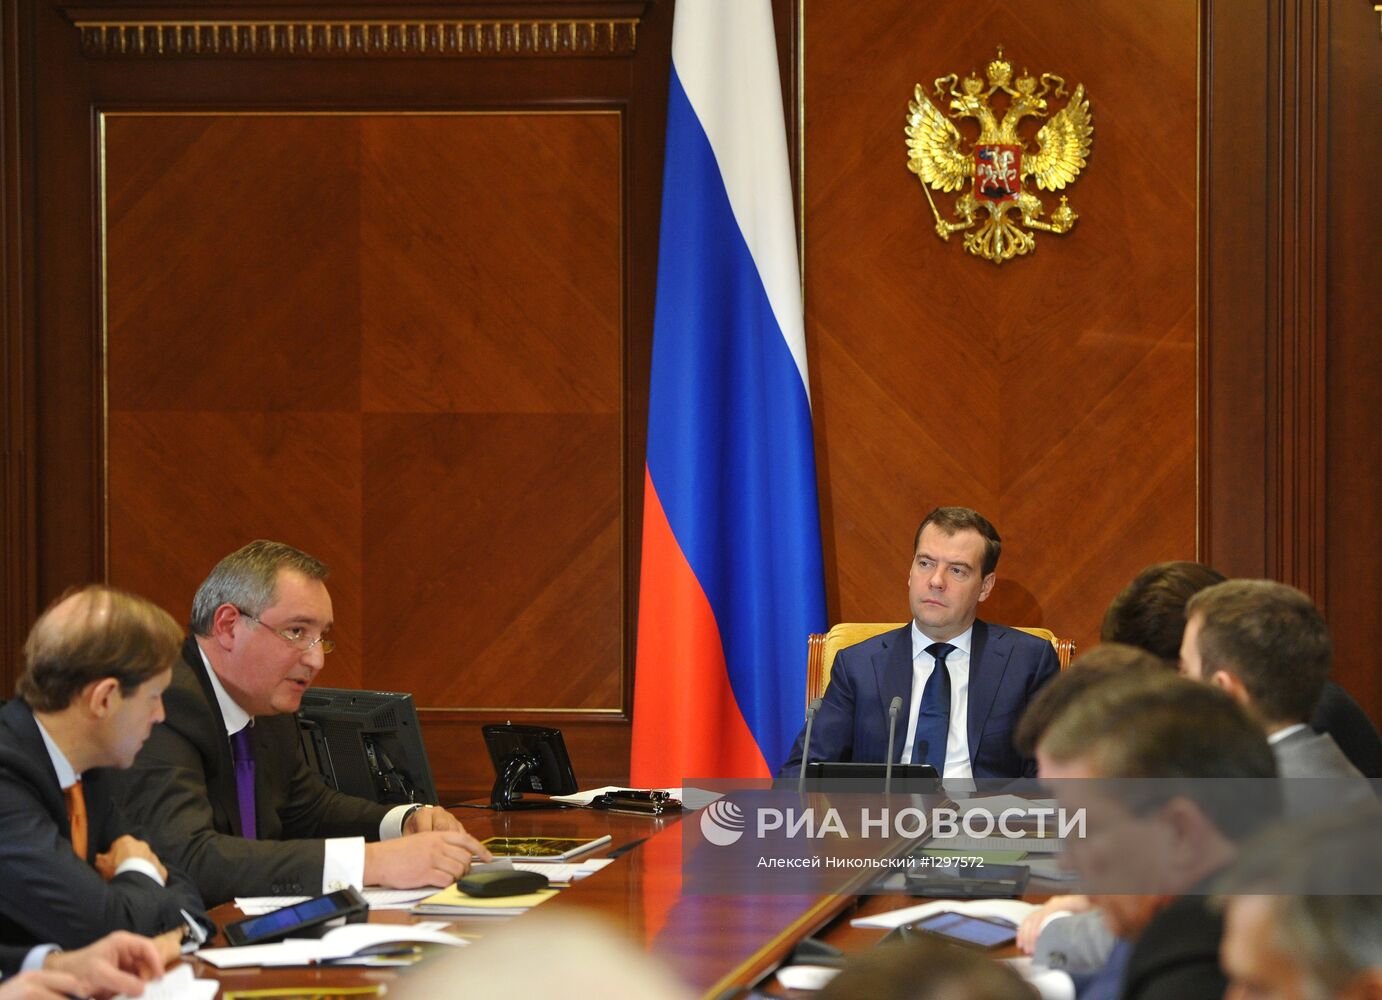 Д.Медведев провел совещание по ракетно-космическому производству